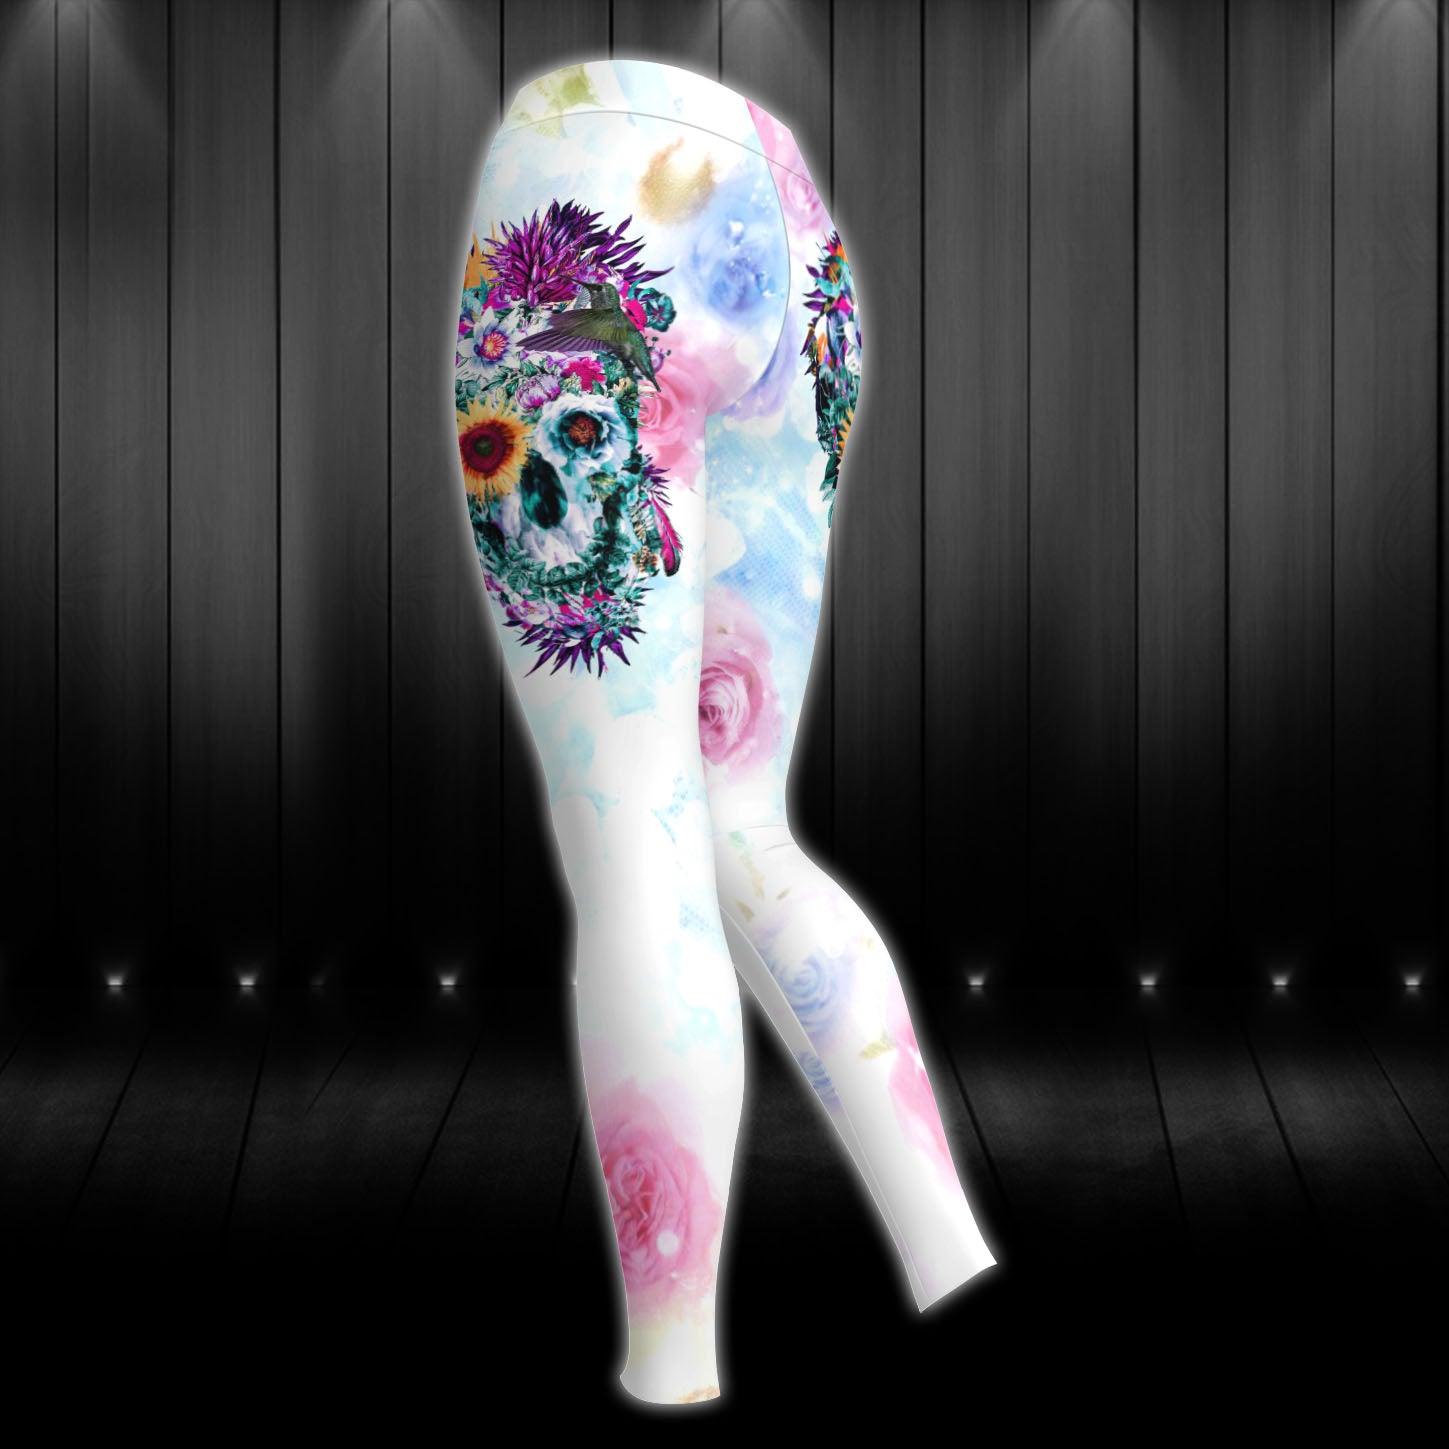 Flower Skull Gothic Colorful Artwork Combo Hoodie and Leggings - Wonder Skull